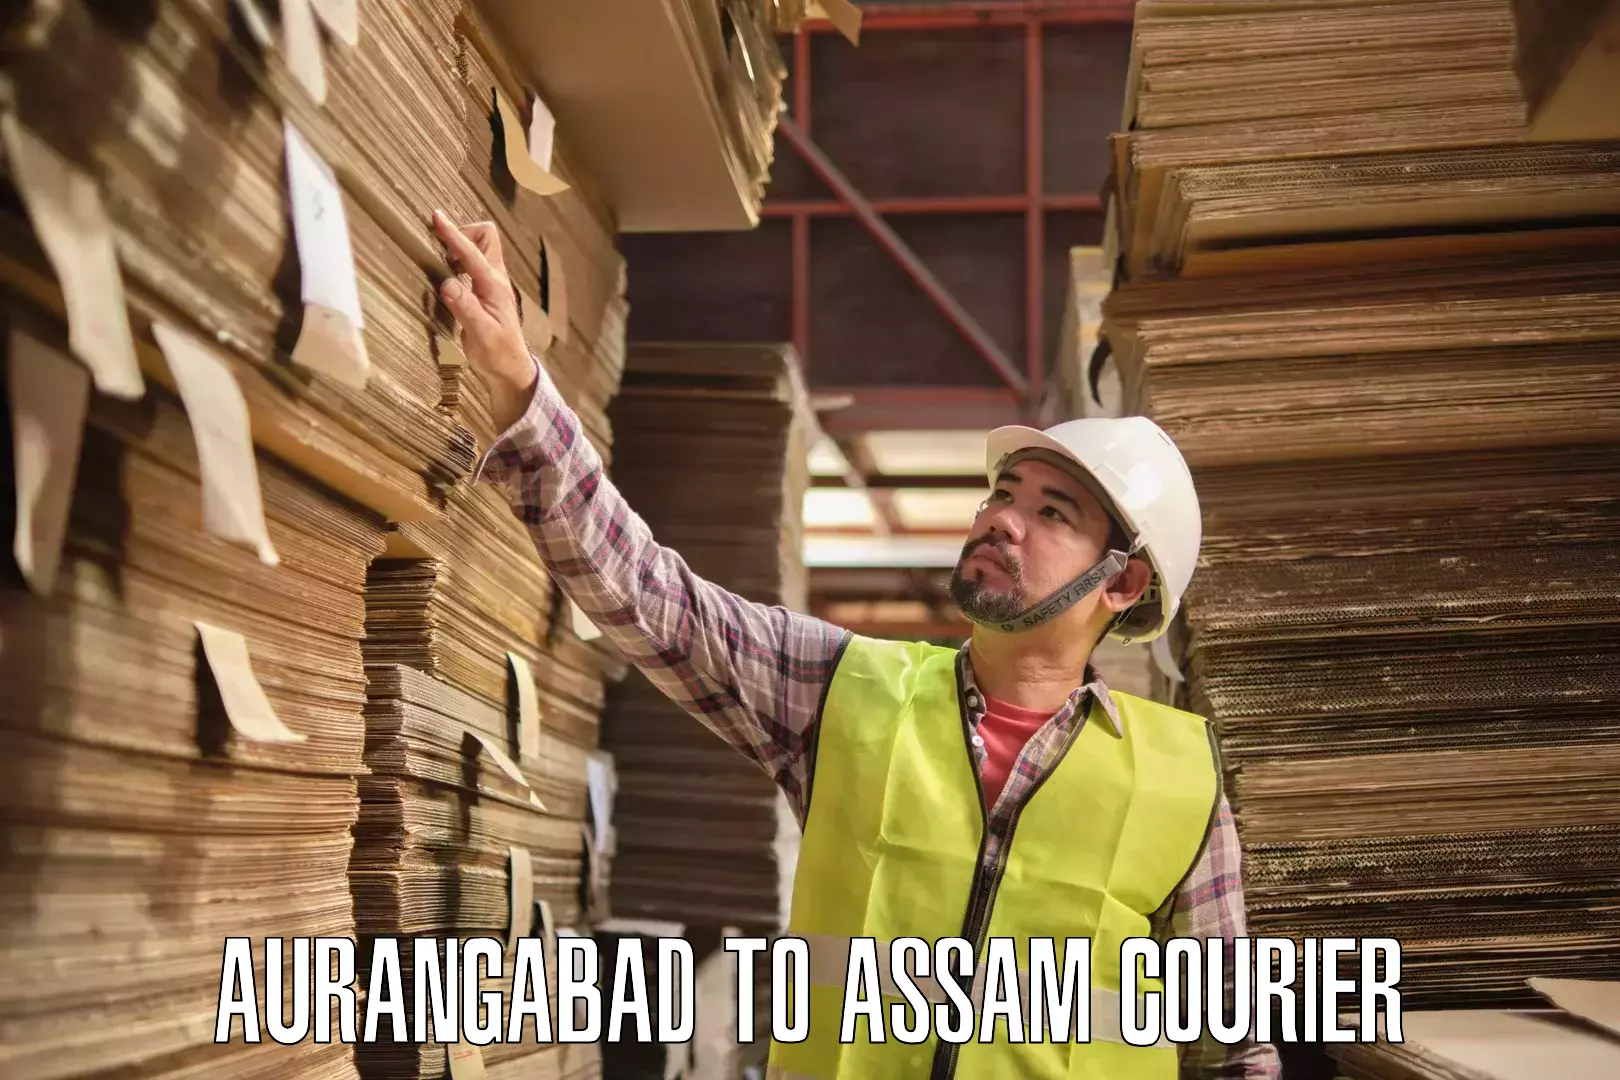 Individual parcel service Aurangabad to Amoni